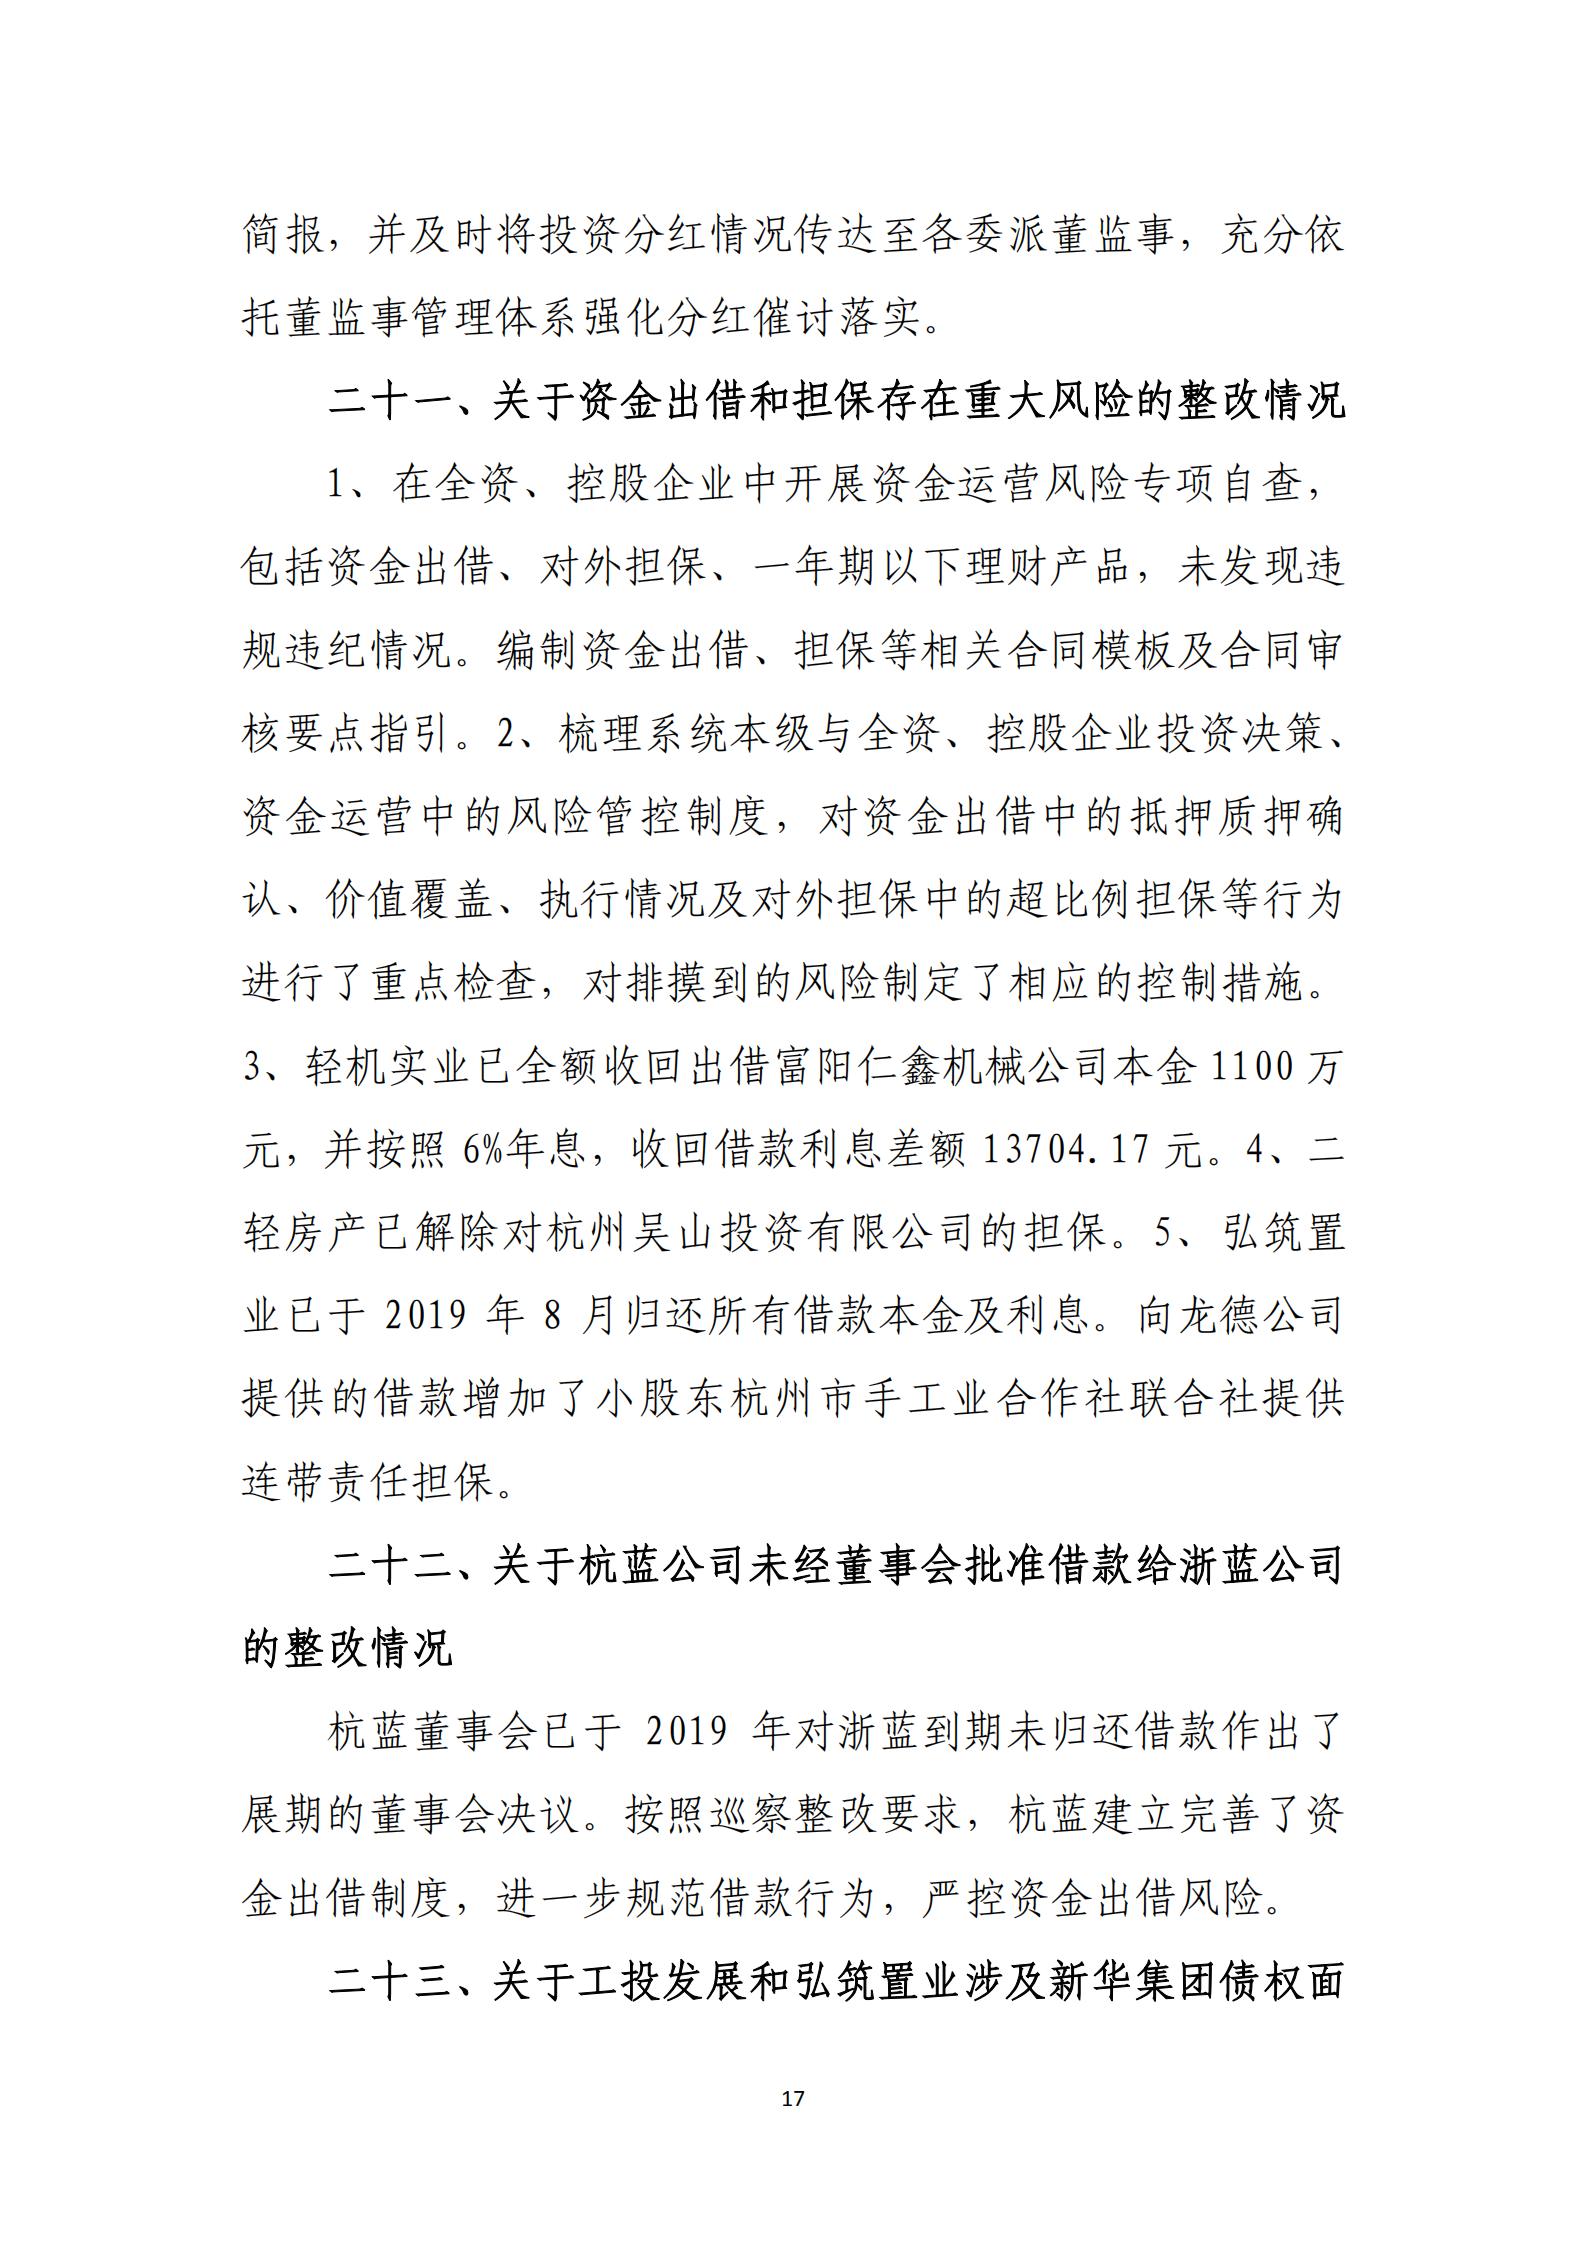 杭实集团党委关于巡察整改情况的通报_16.png